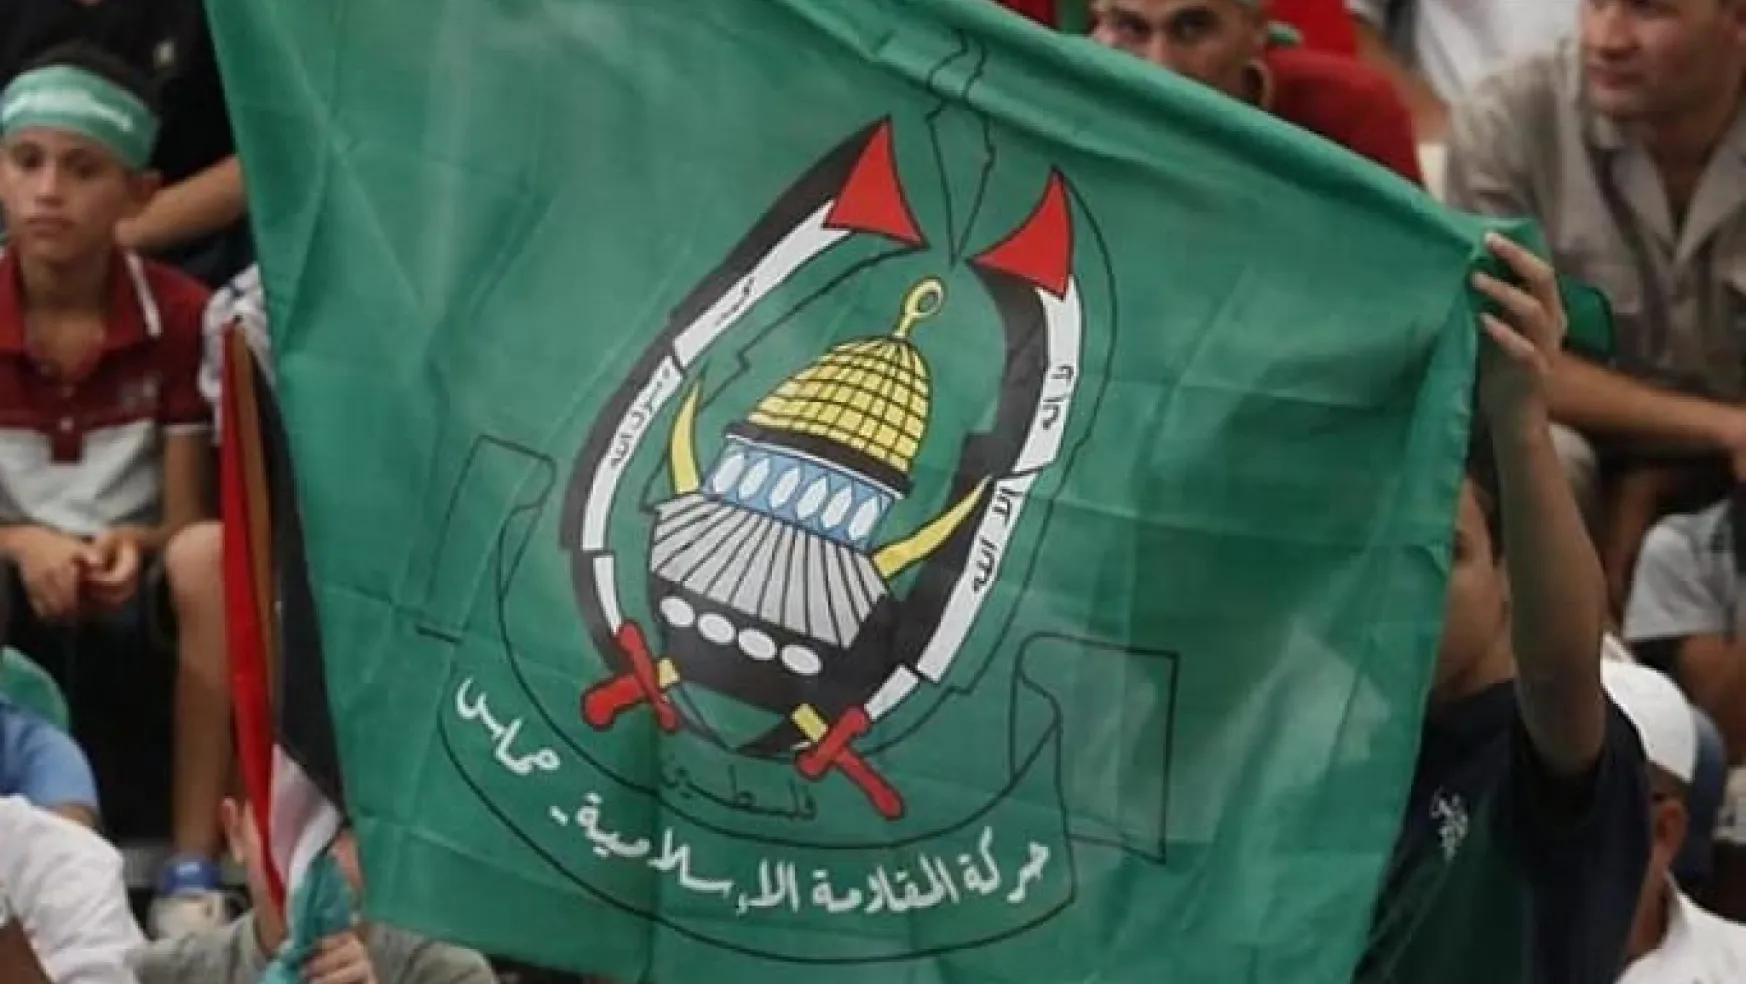 Hamas'tan İsrail'in "paralı asker kullandığı" iddiasına sert tepki